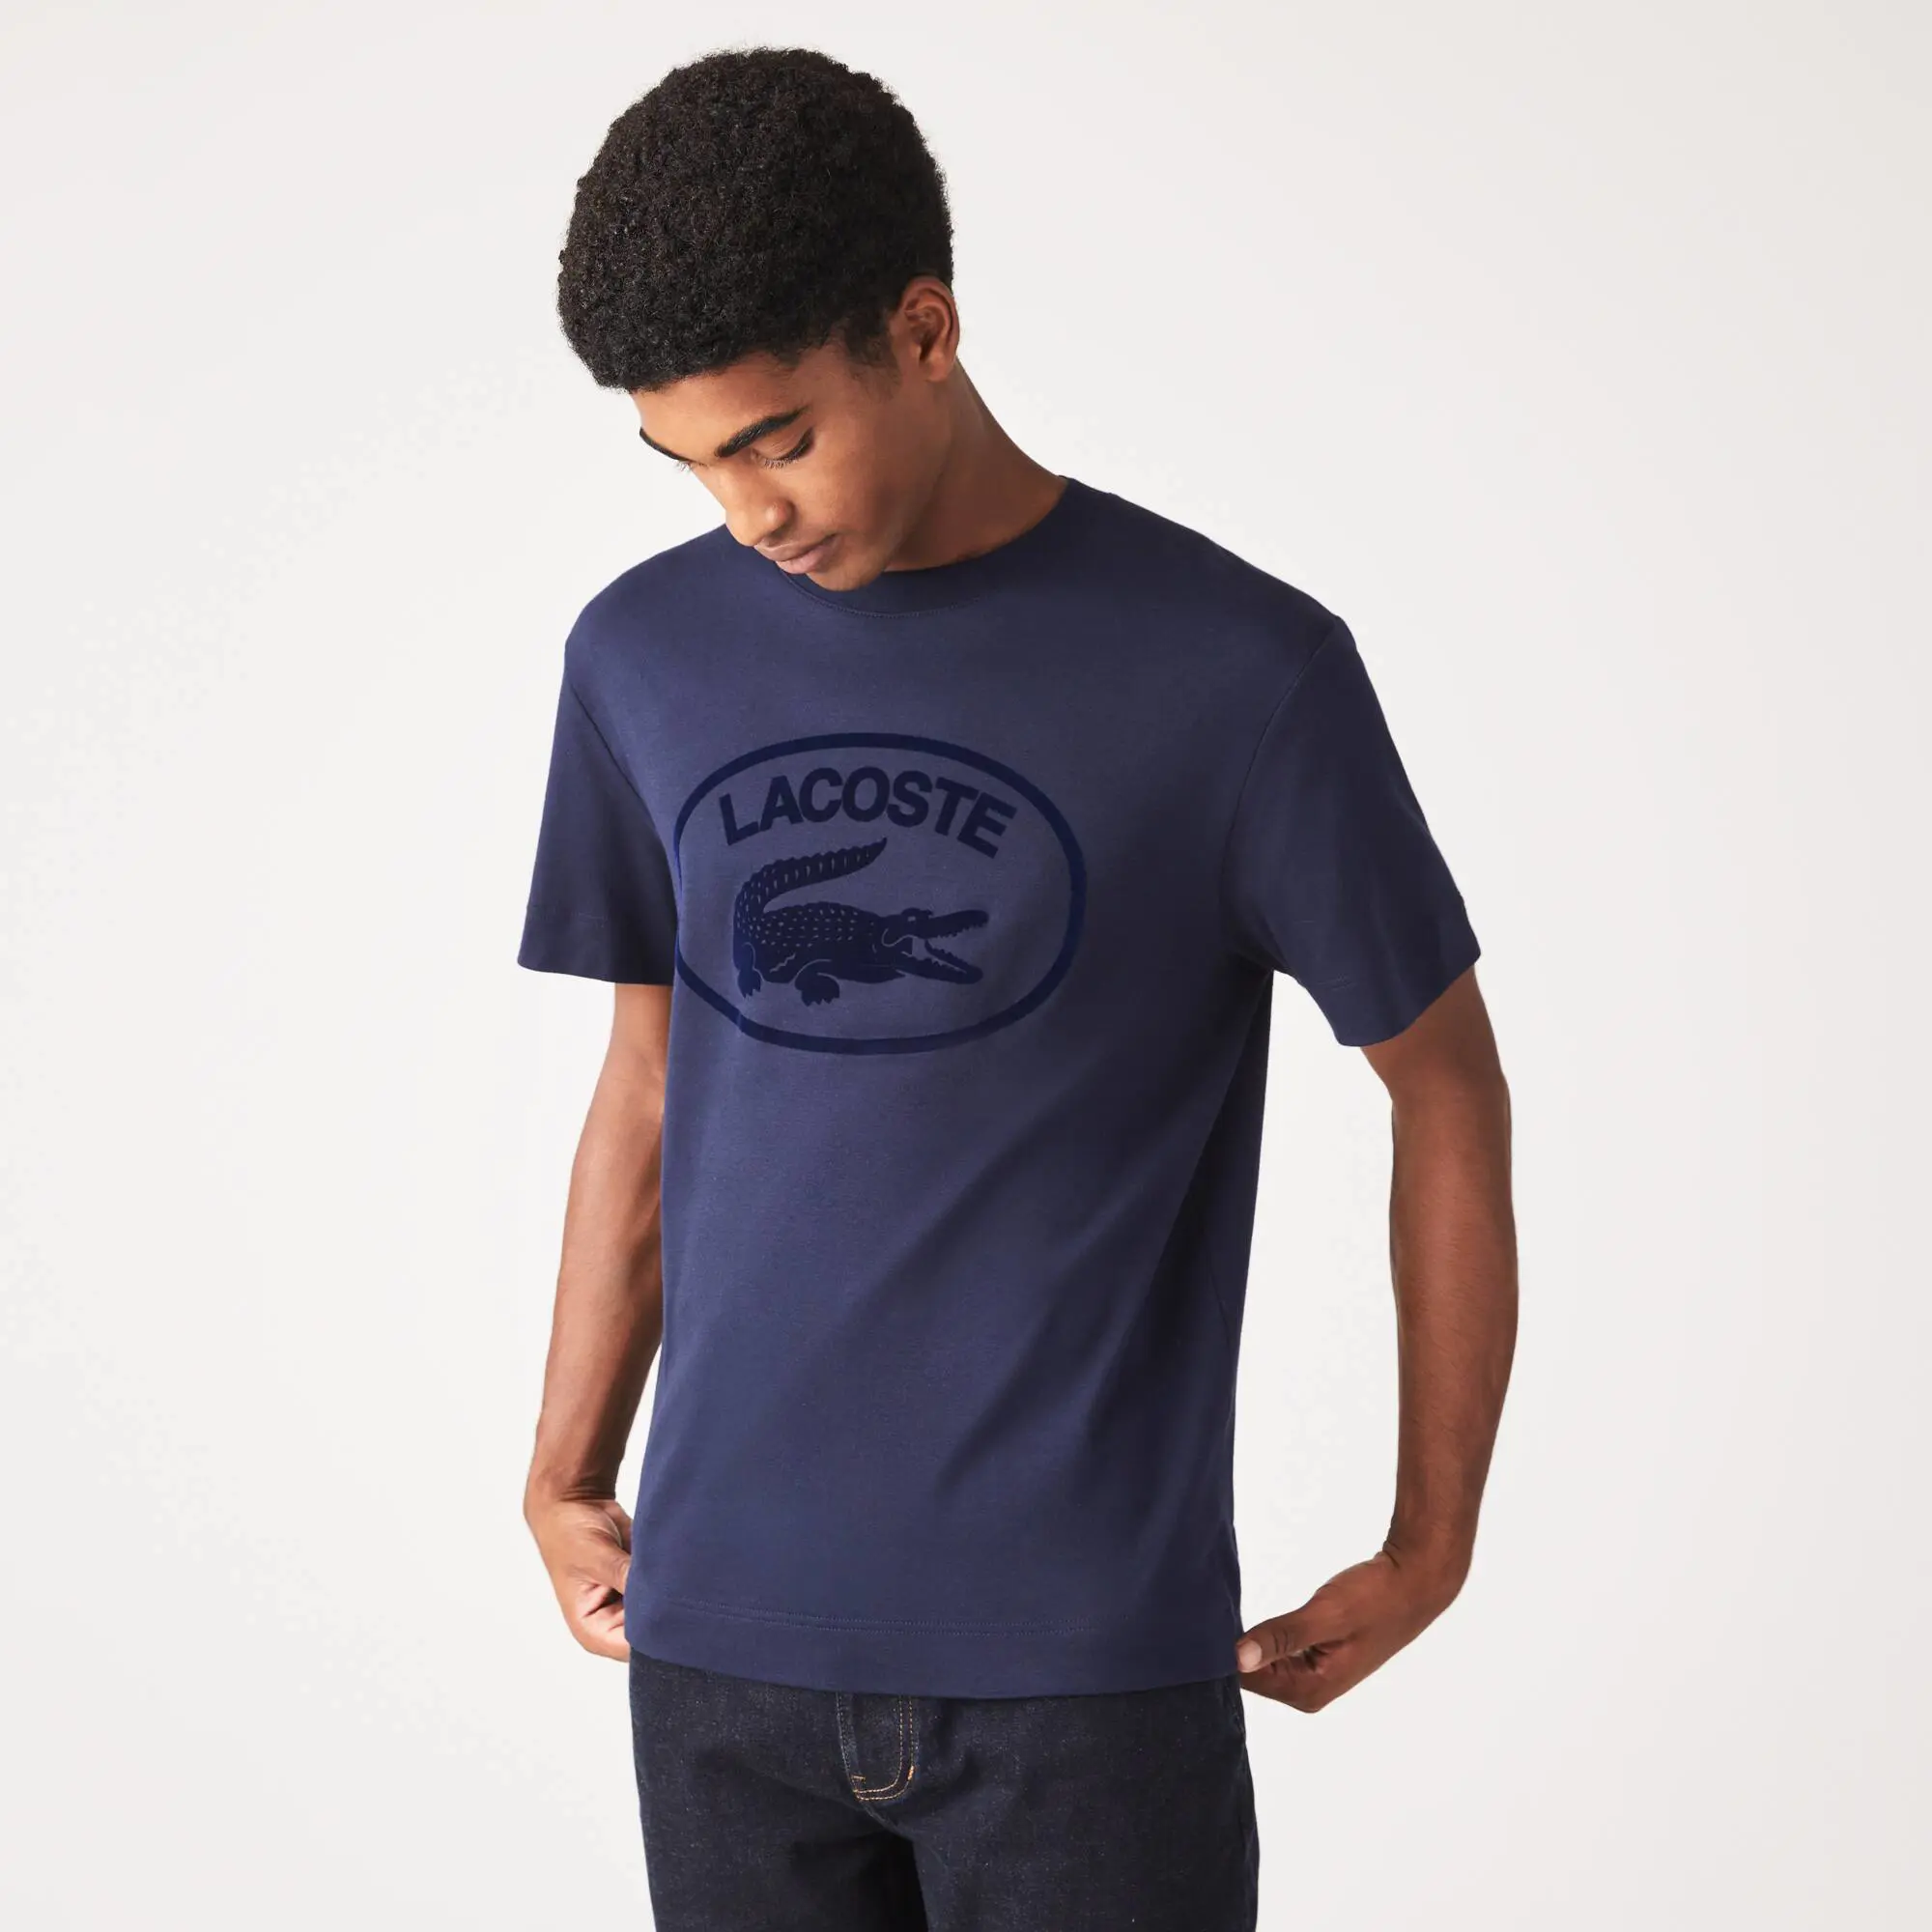 Lacoste Camiseta de hombre Lacoste relaxed fit en algodón con detalles de la marca a tono. 1